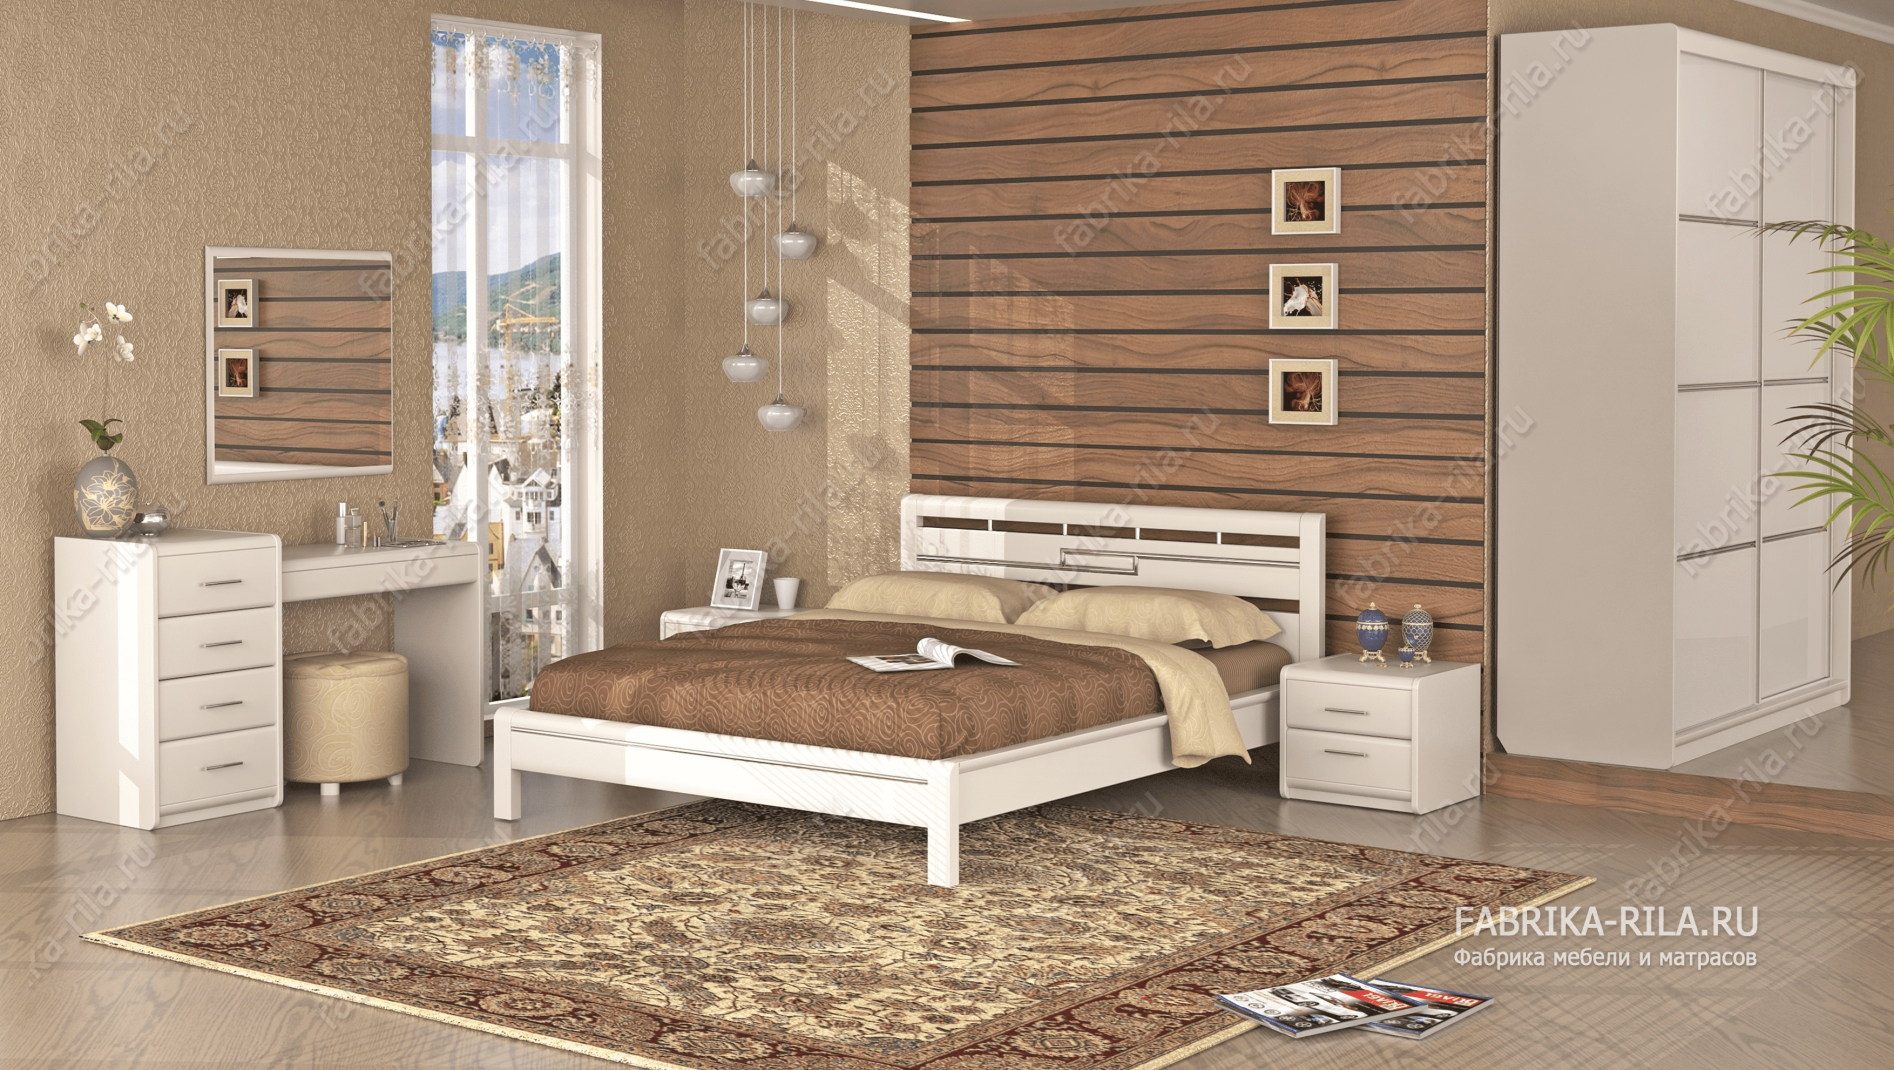 Кровать Okaeri 4 — 120x200 см. из сосны